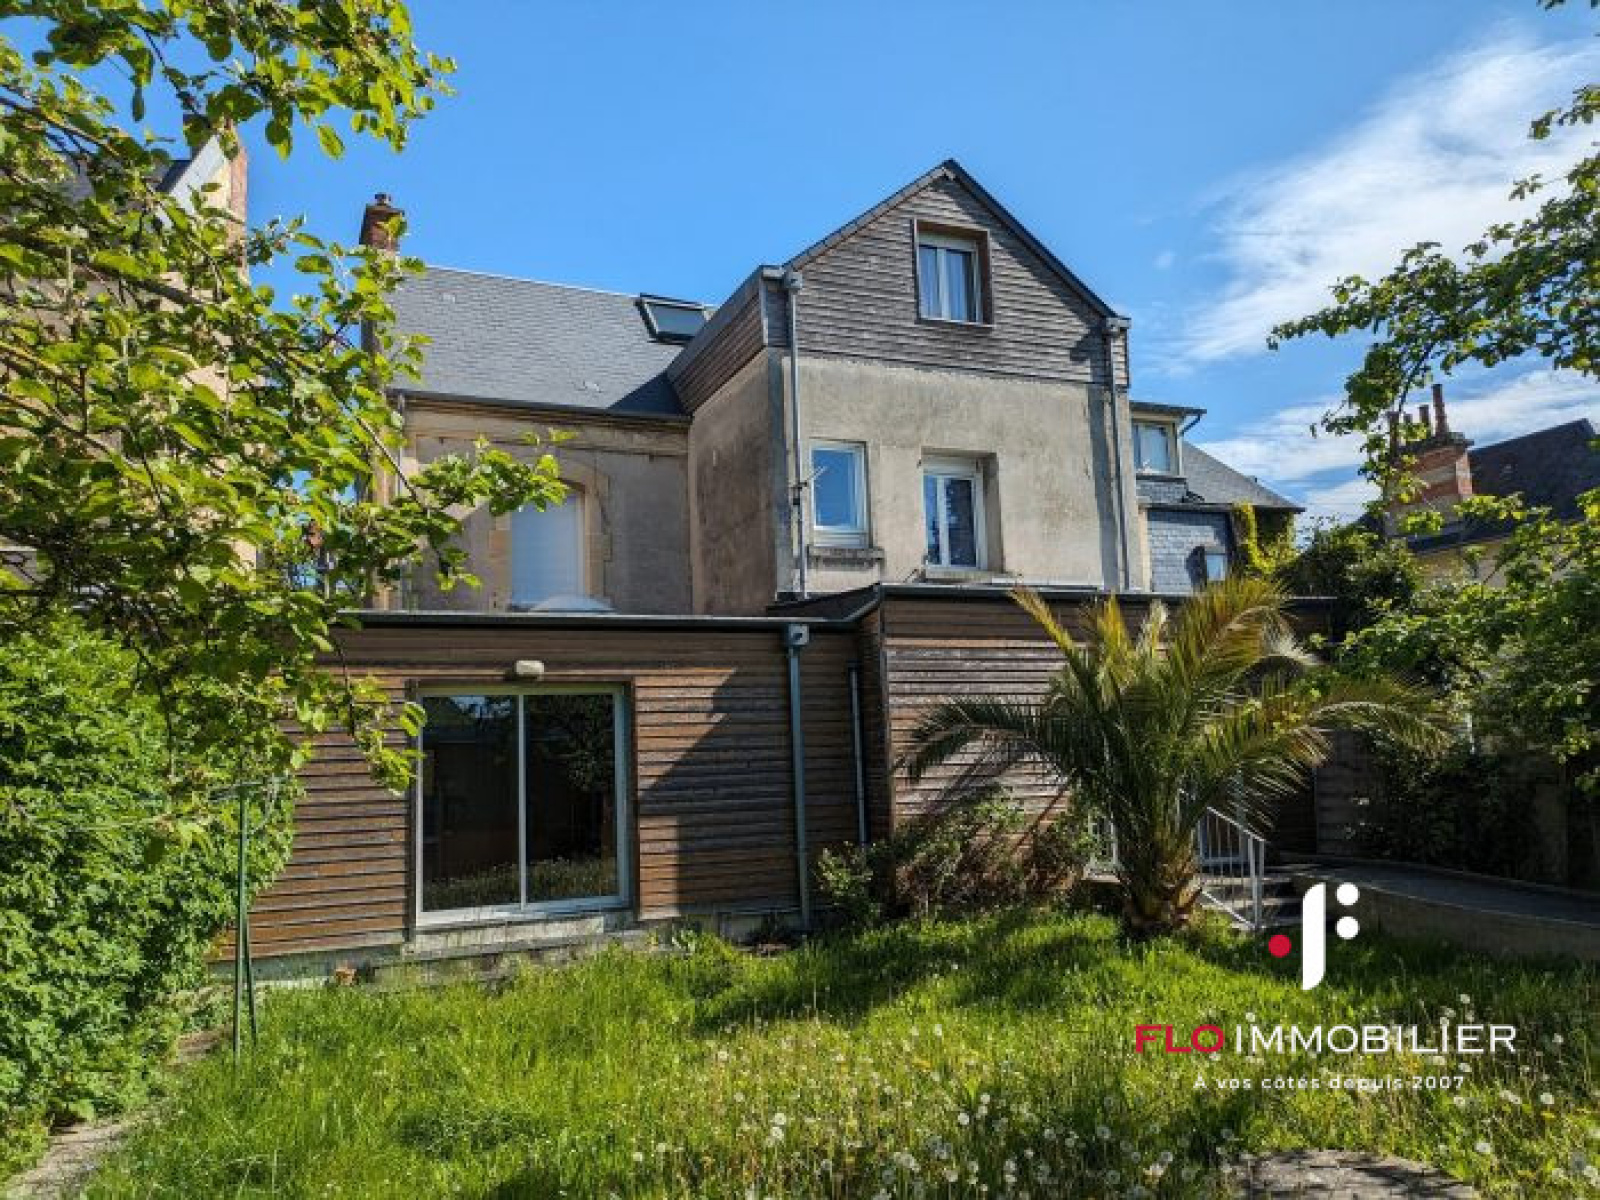 Vente Maison 210m² 10 Pièces à Caen (14000) - Flo Immobilier